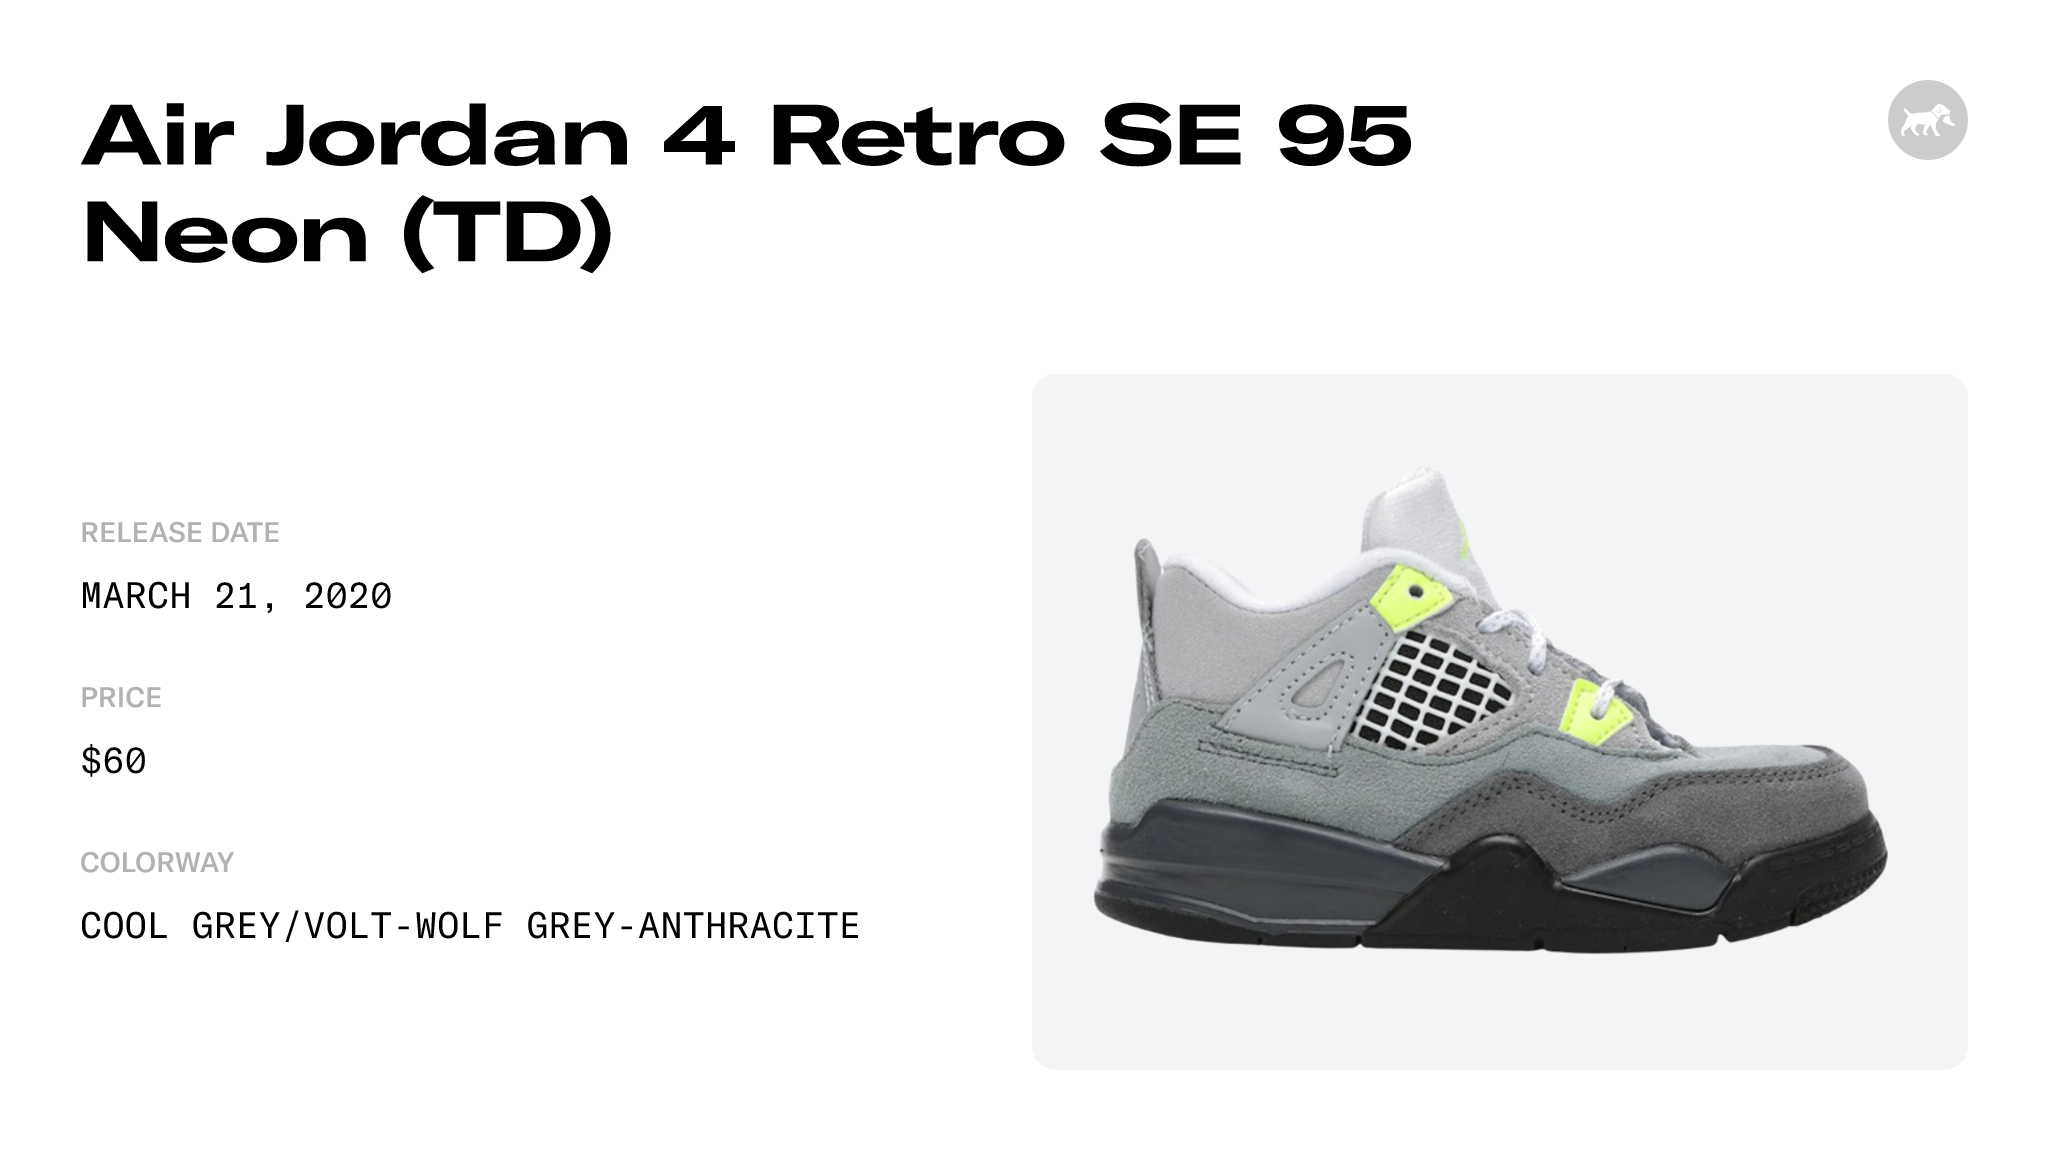 Air Jordan 4 Retro SE Neon CT5342-007 Release Date